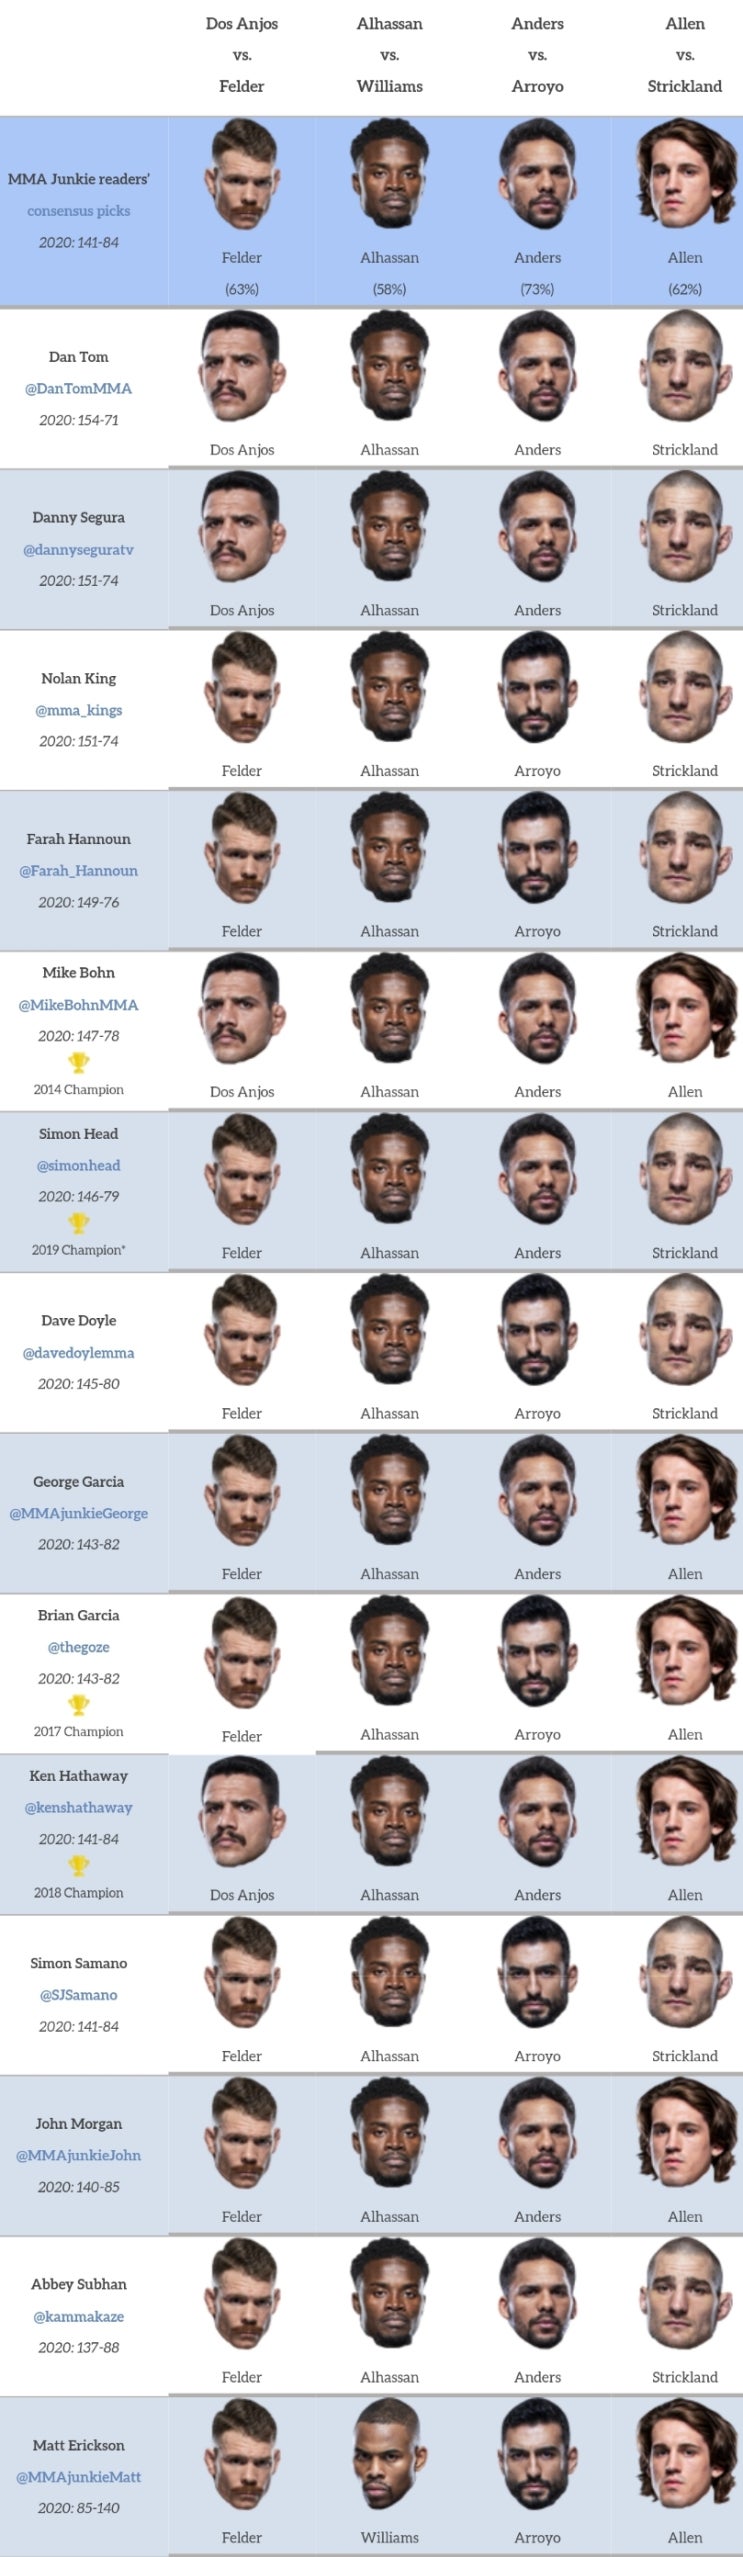 UFC 베가스 14: 펠더 vs 도스 안요스 프리뷰(미디어 예상 및 배당률)